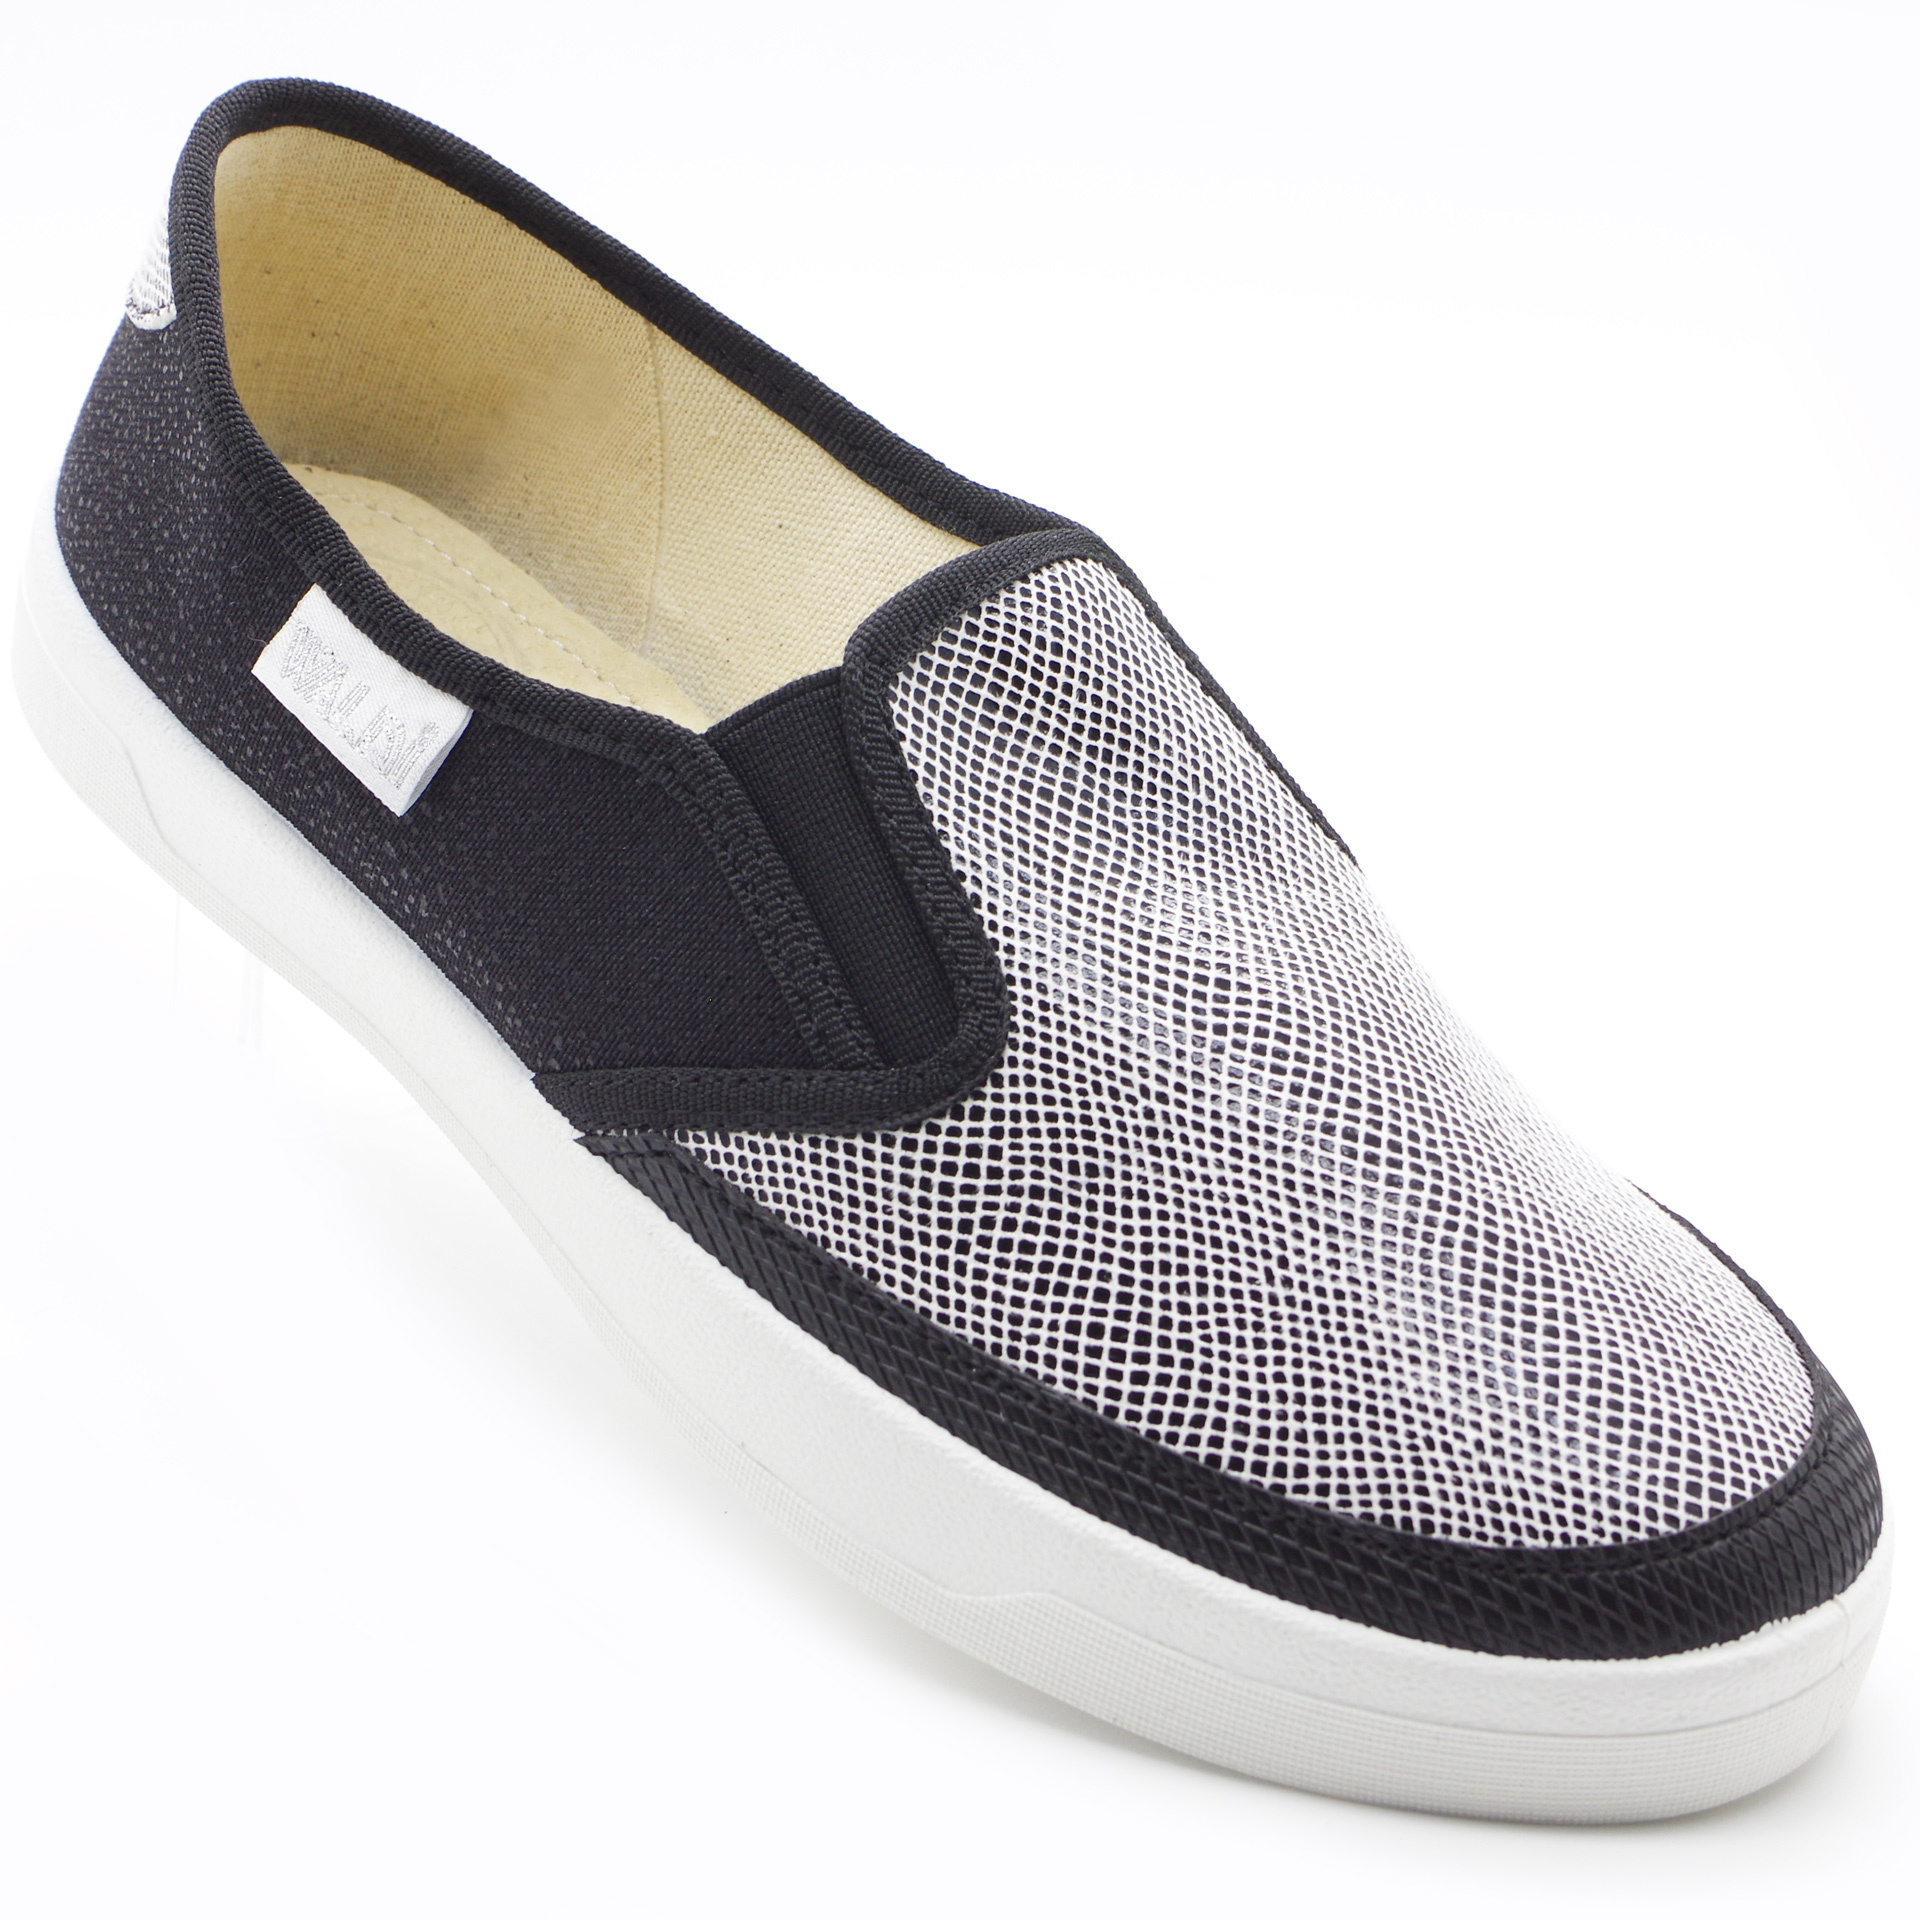 Текстильная обувь для девочек Waldi Мокасины (2206) цвет Черный 37-40 размеры – Sole Kids